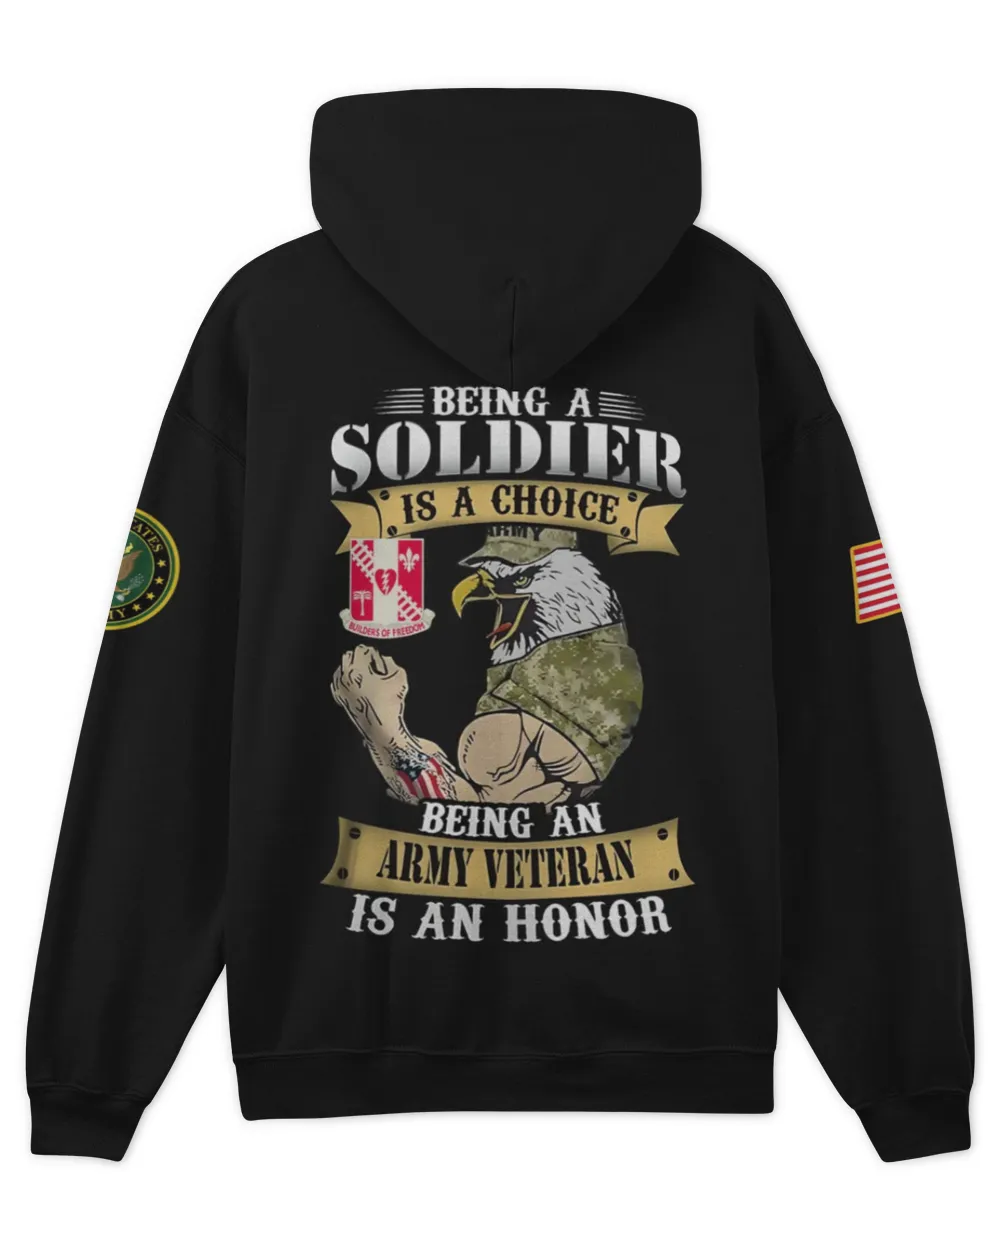 44th Engineer Battalion  Tshirt